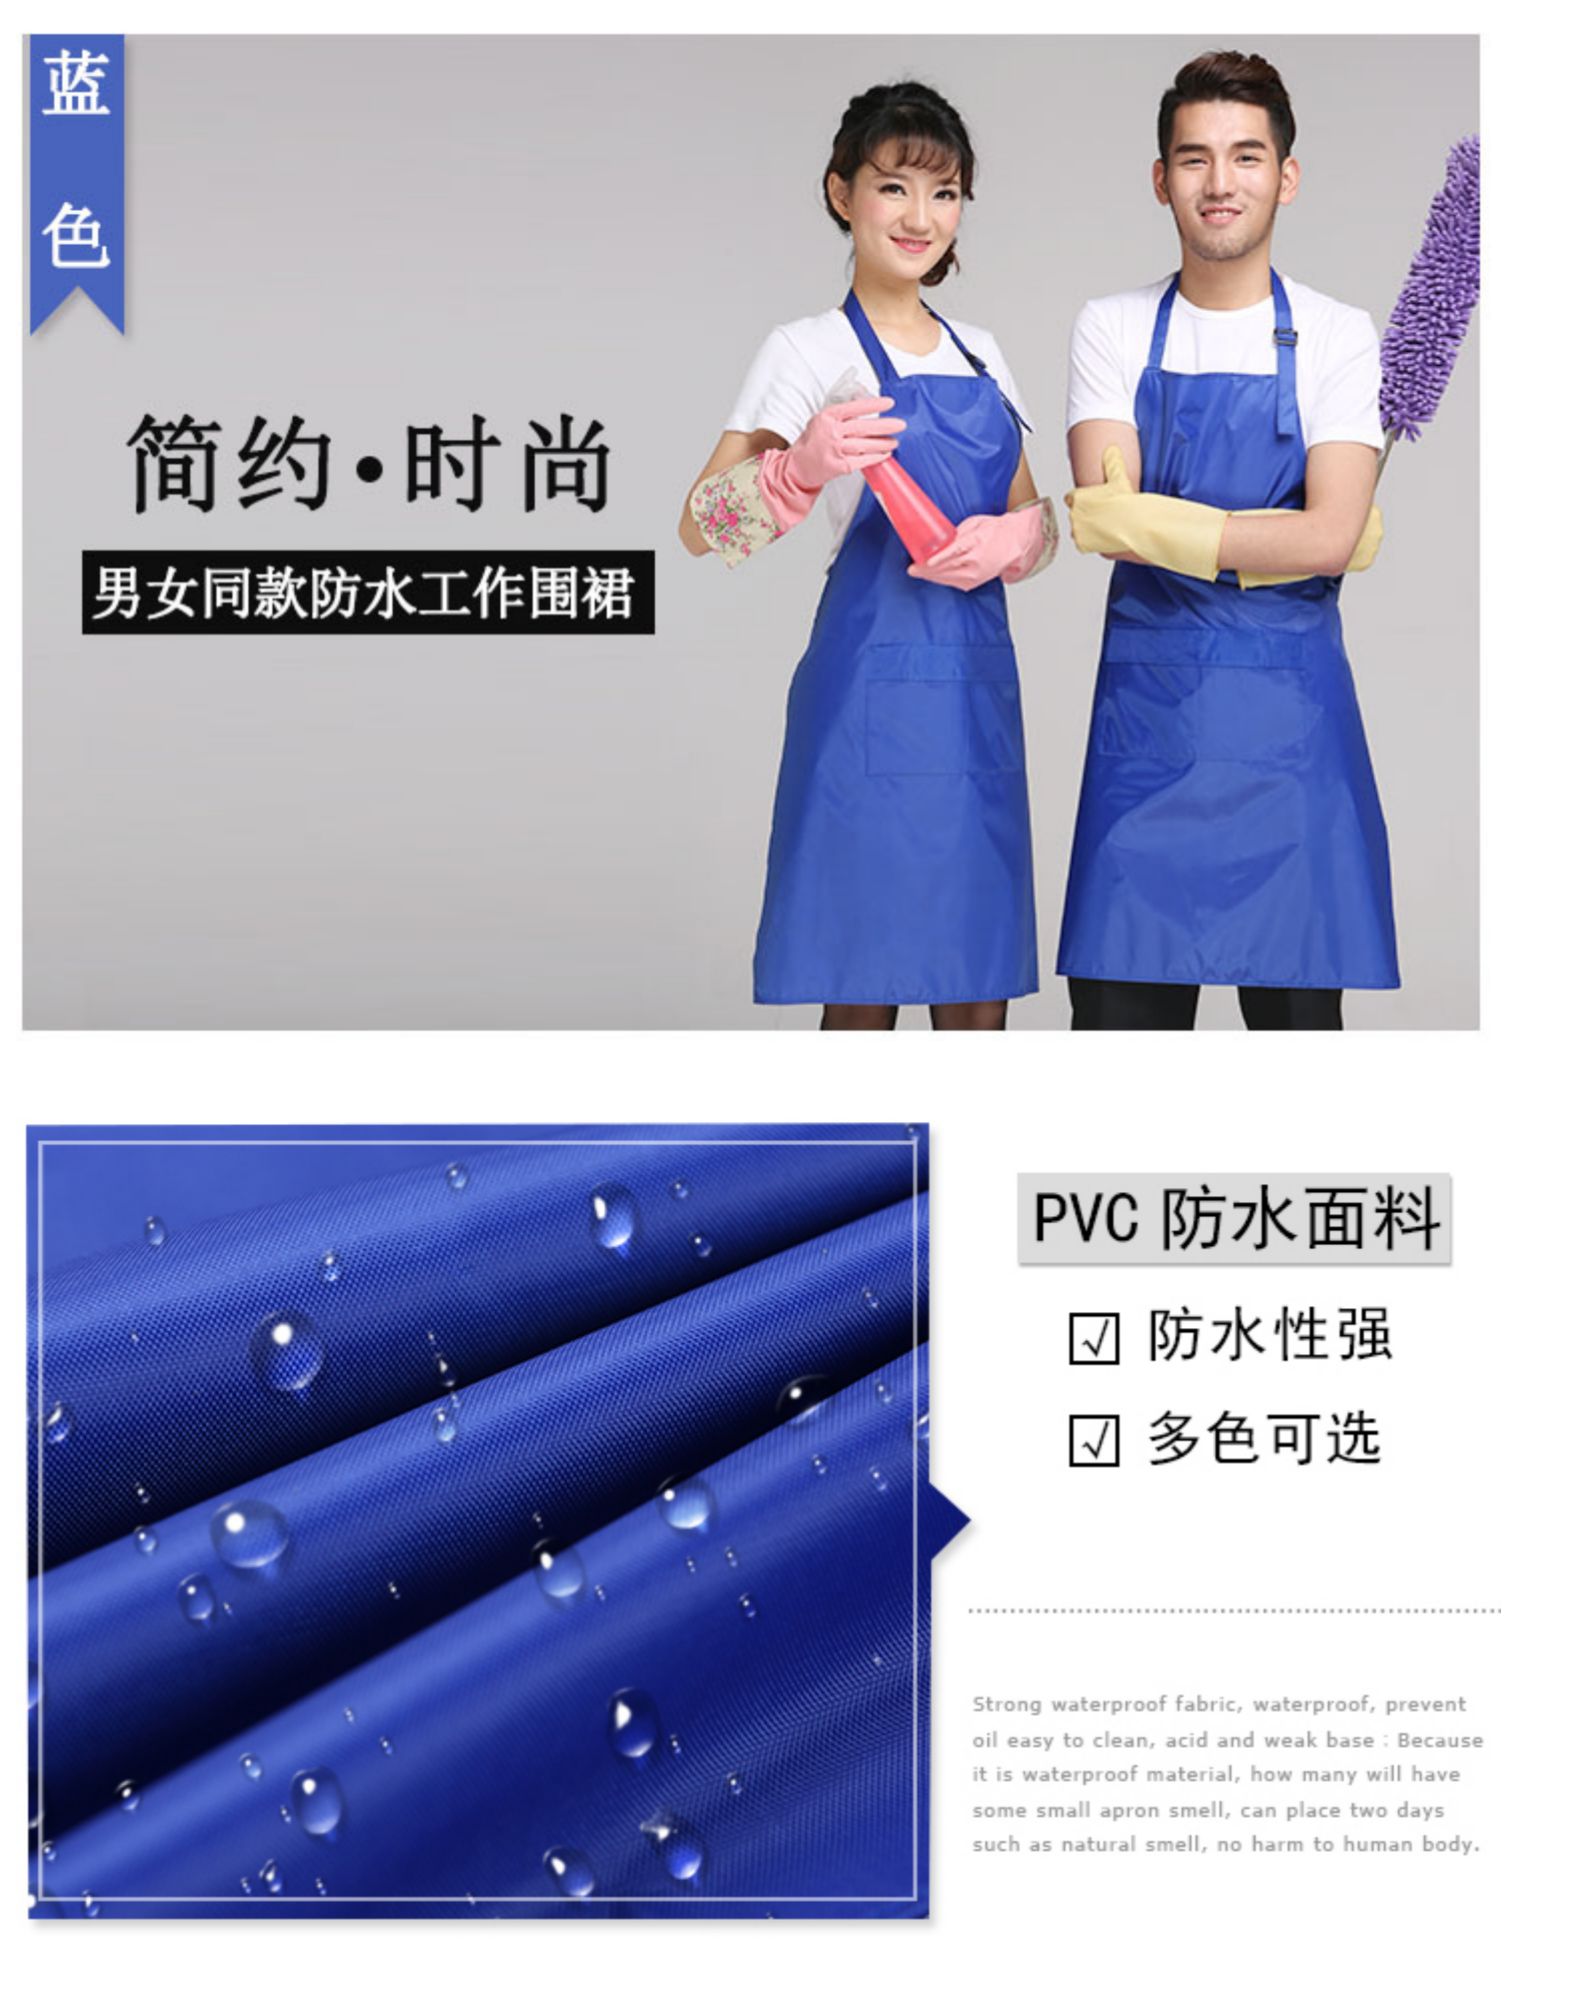 围裙 防水PVC厨房简约工作服韩版时尚防水厨师围裙男女定制(图6)